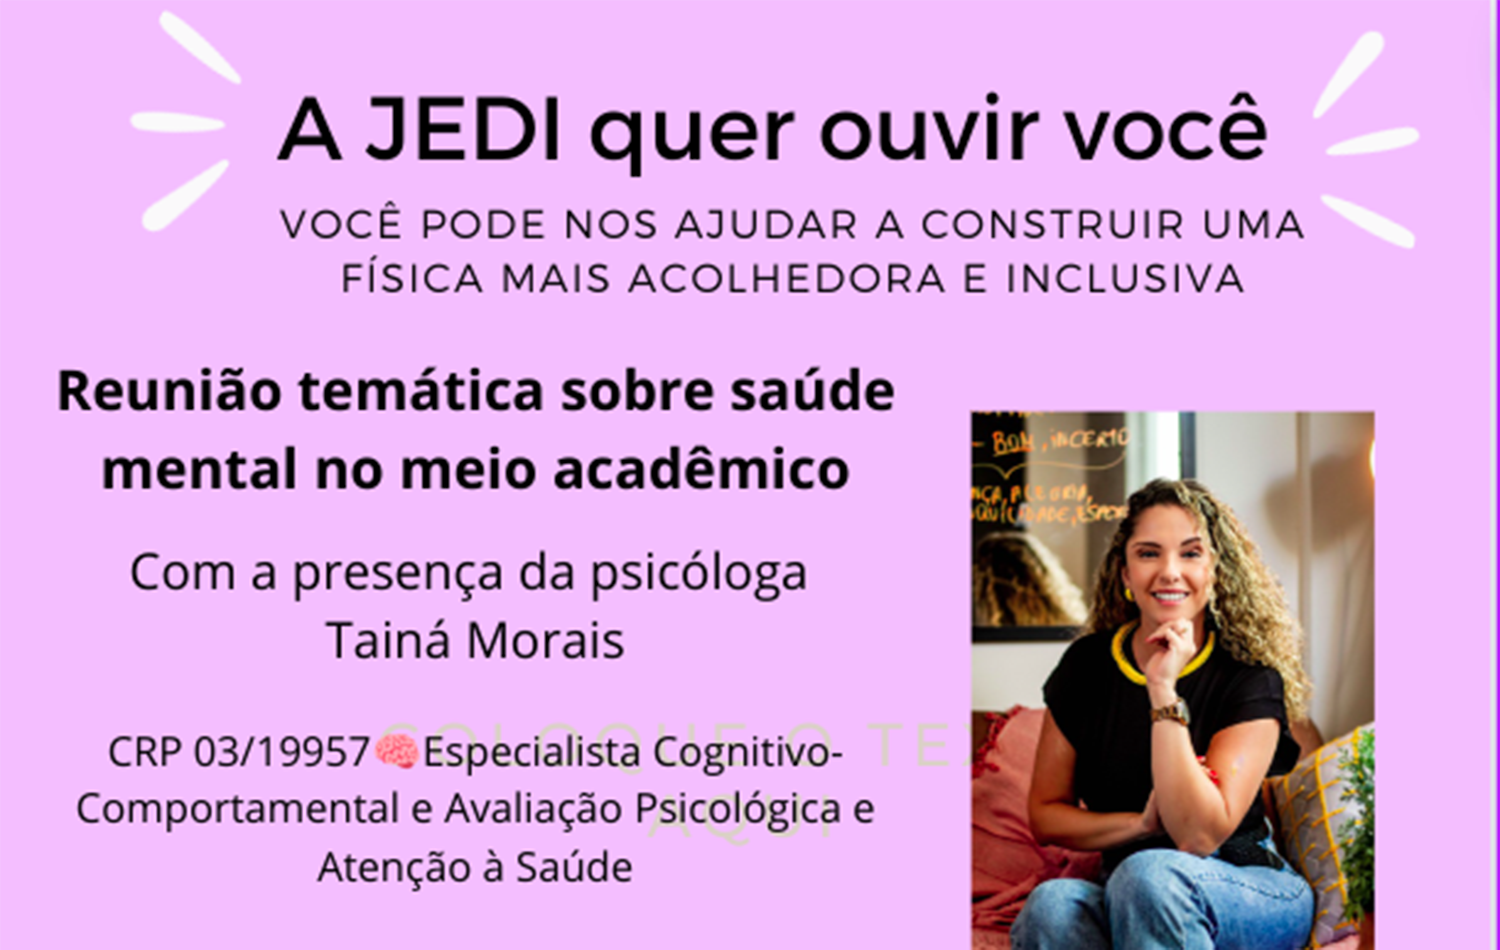 Corte do card da reunião da a Comissão de Justiça, Equidade, Diversidade e Inclusão (JEDI-SBF) sobre saúde mental, com a psicóloga Tainá Moraes.